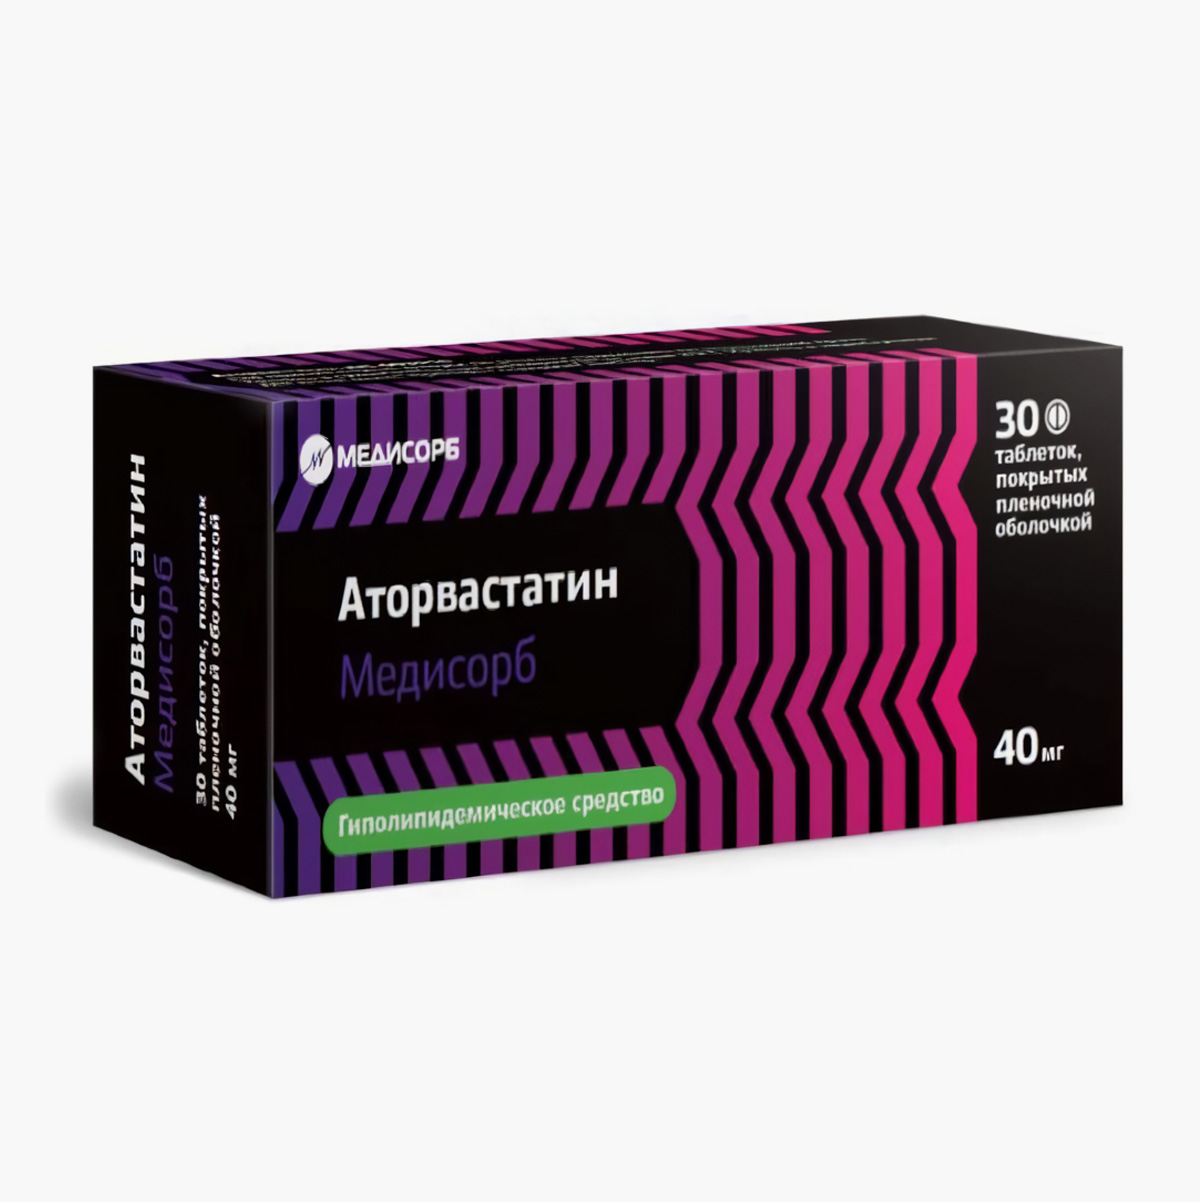 Таблетки «Аторвастатин Медисорб». Разница по цене с оригиналом — около 50 ₽. Источник: apteka.ru